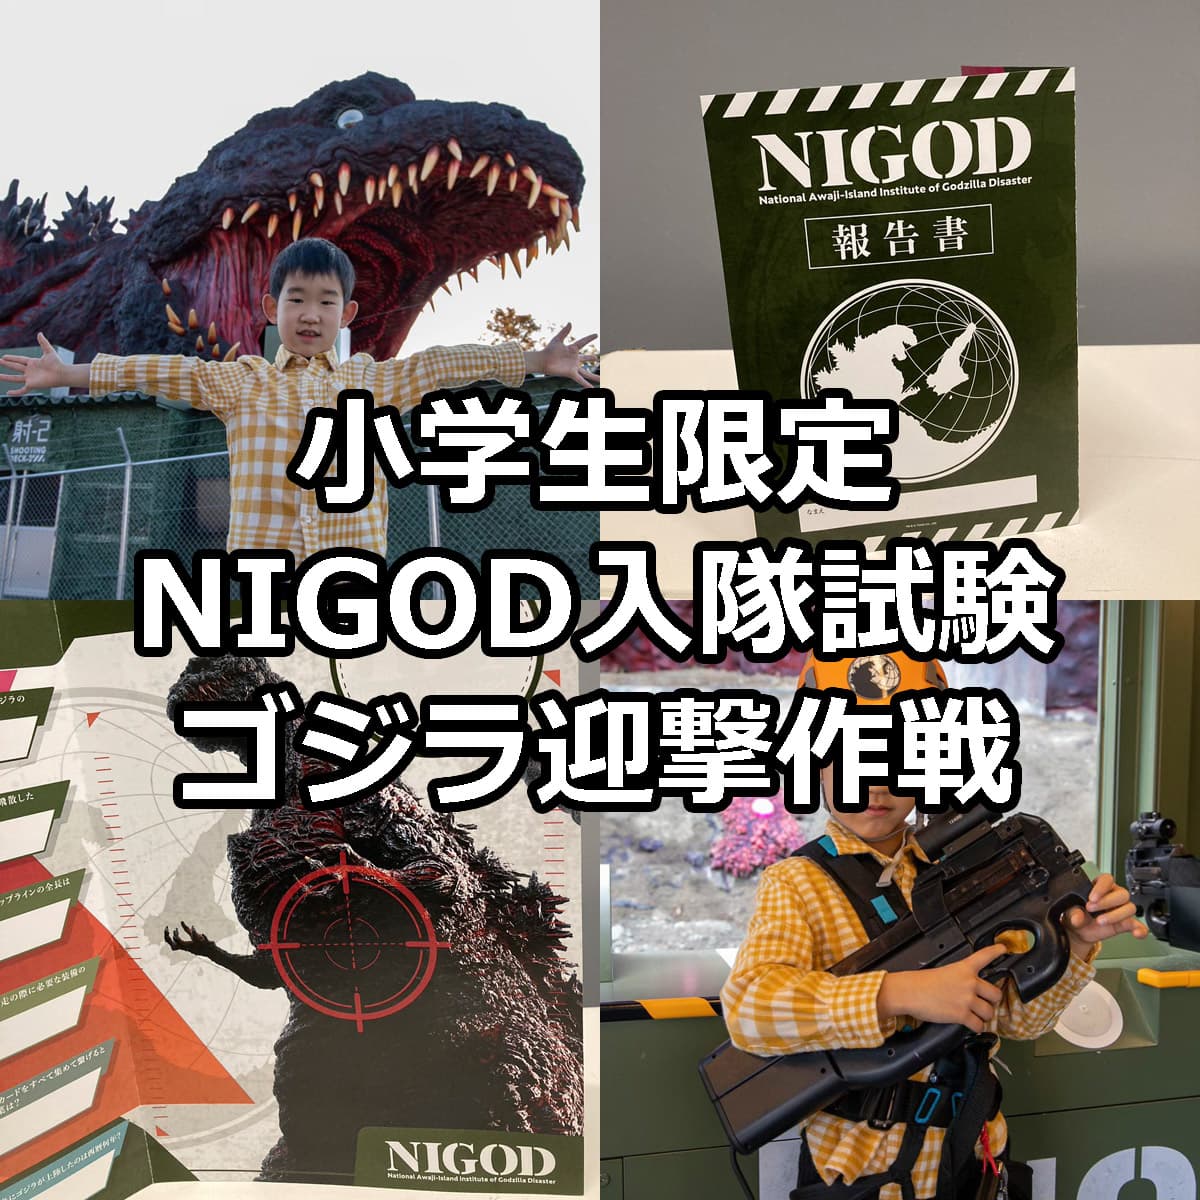 小学生限定「NIGOD入隊試験」ゴジラ迎撃作戦